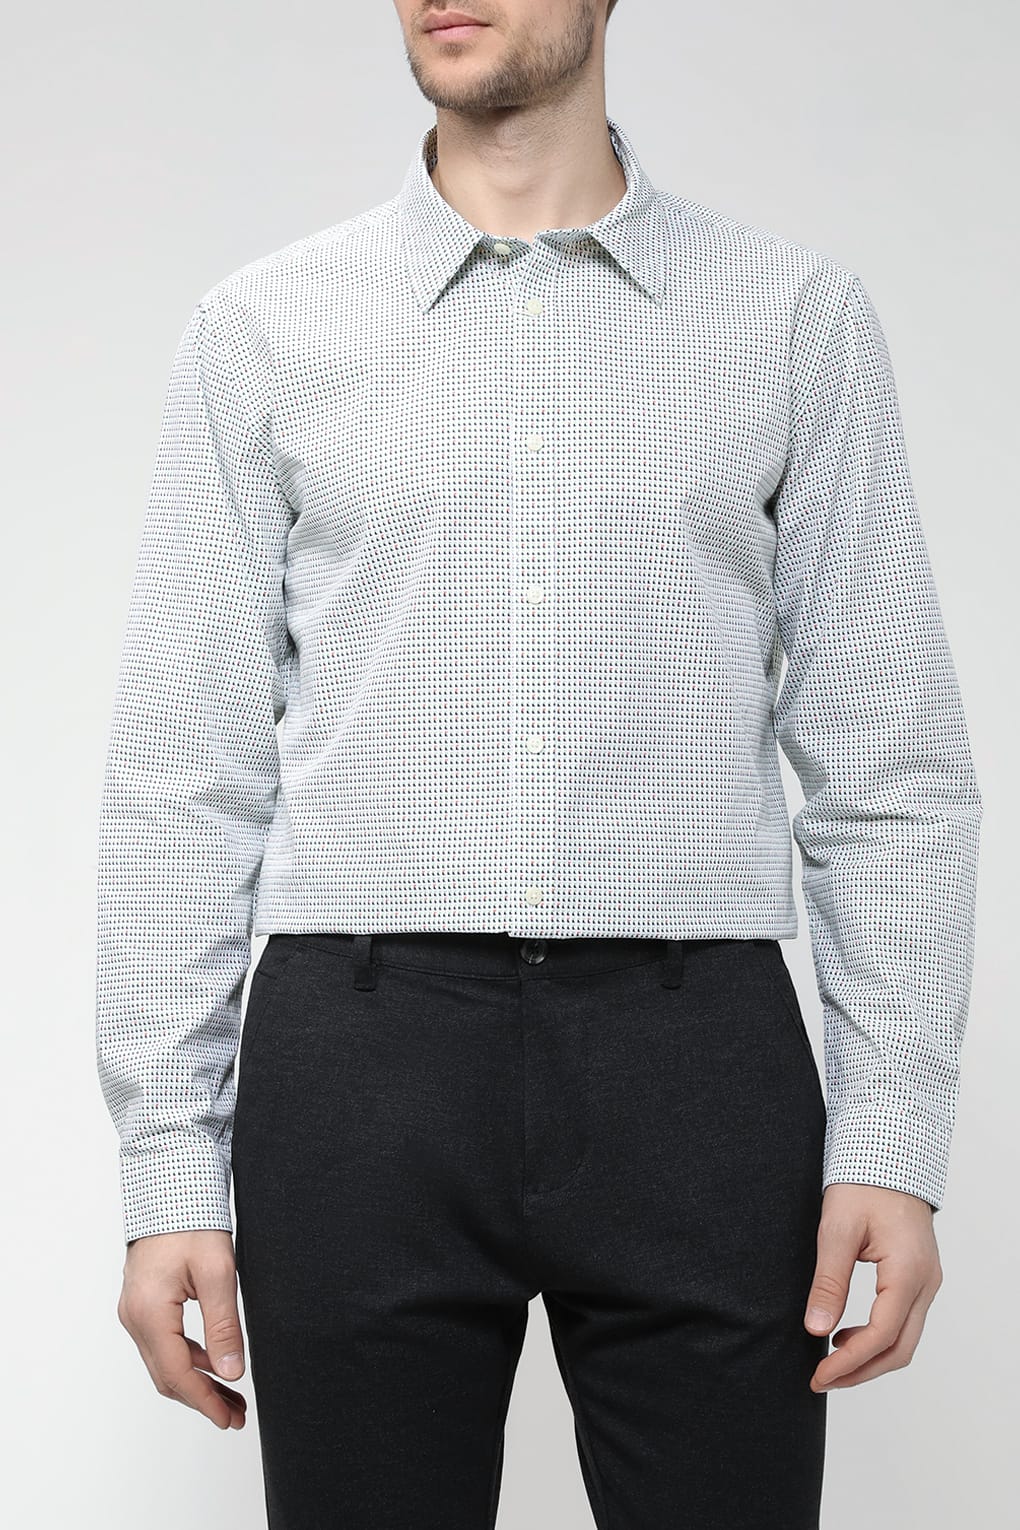 Рубашка мужская Esprit Casual 013EE2F303 белая XL